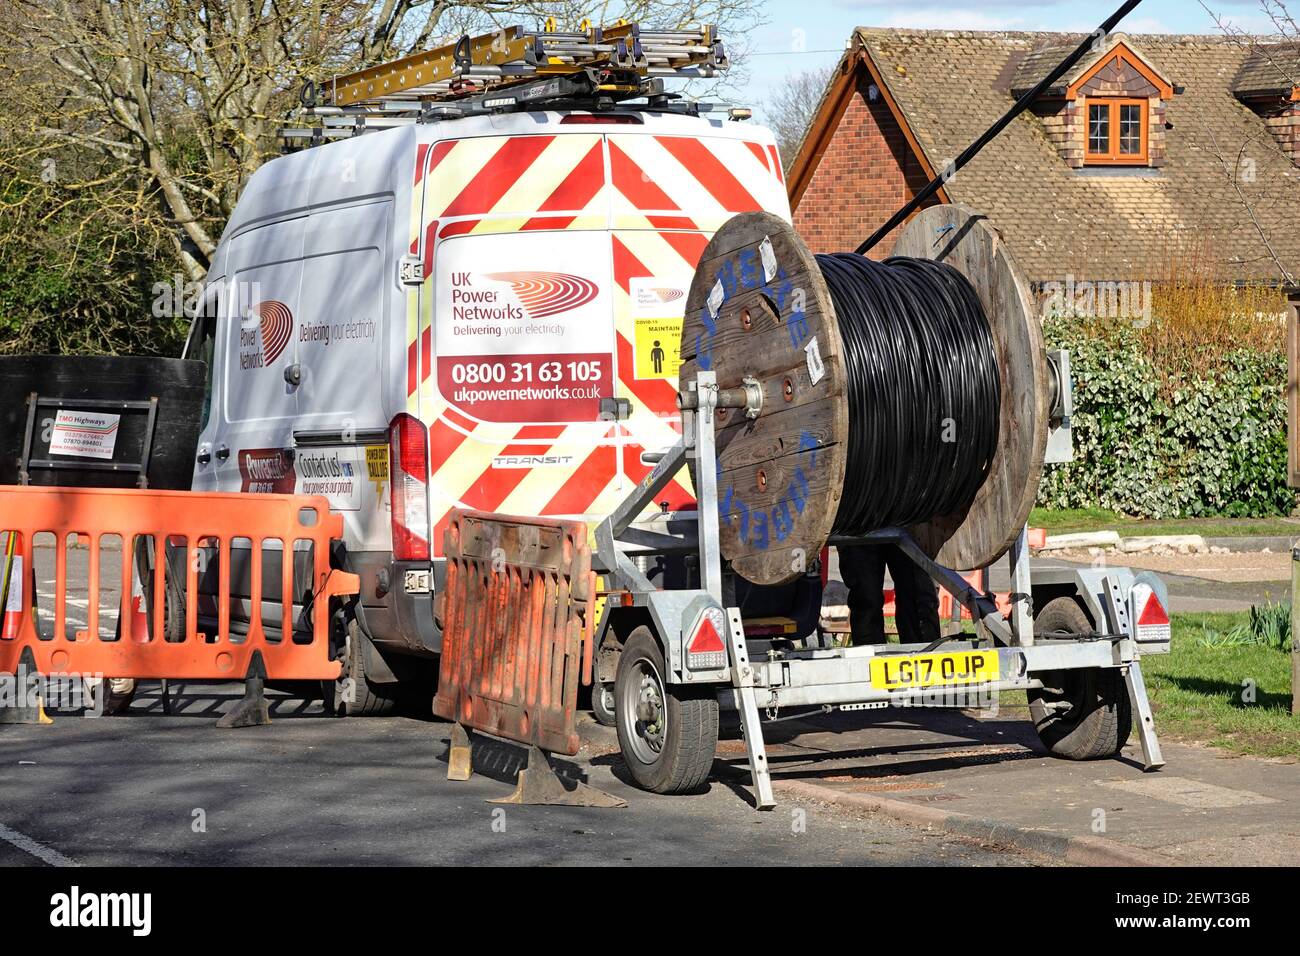 UK Power Networks Distribution Business van & cable drum Trailer Austausch des Stromnetzes Oberleitungen Versorgung Dorf Standort Essex England Stockfoto